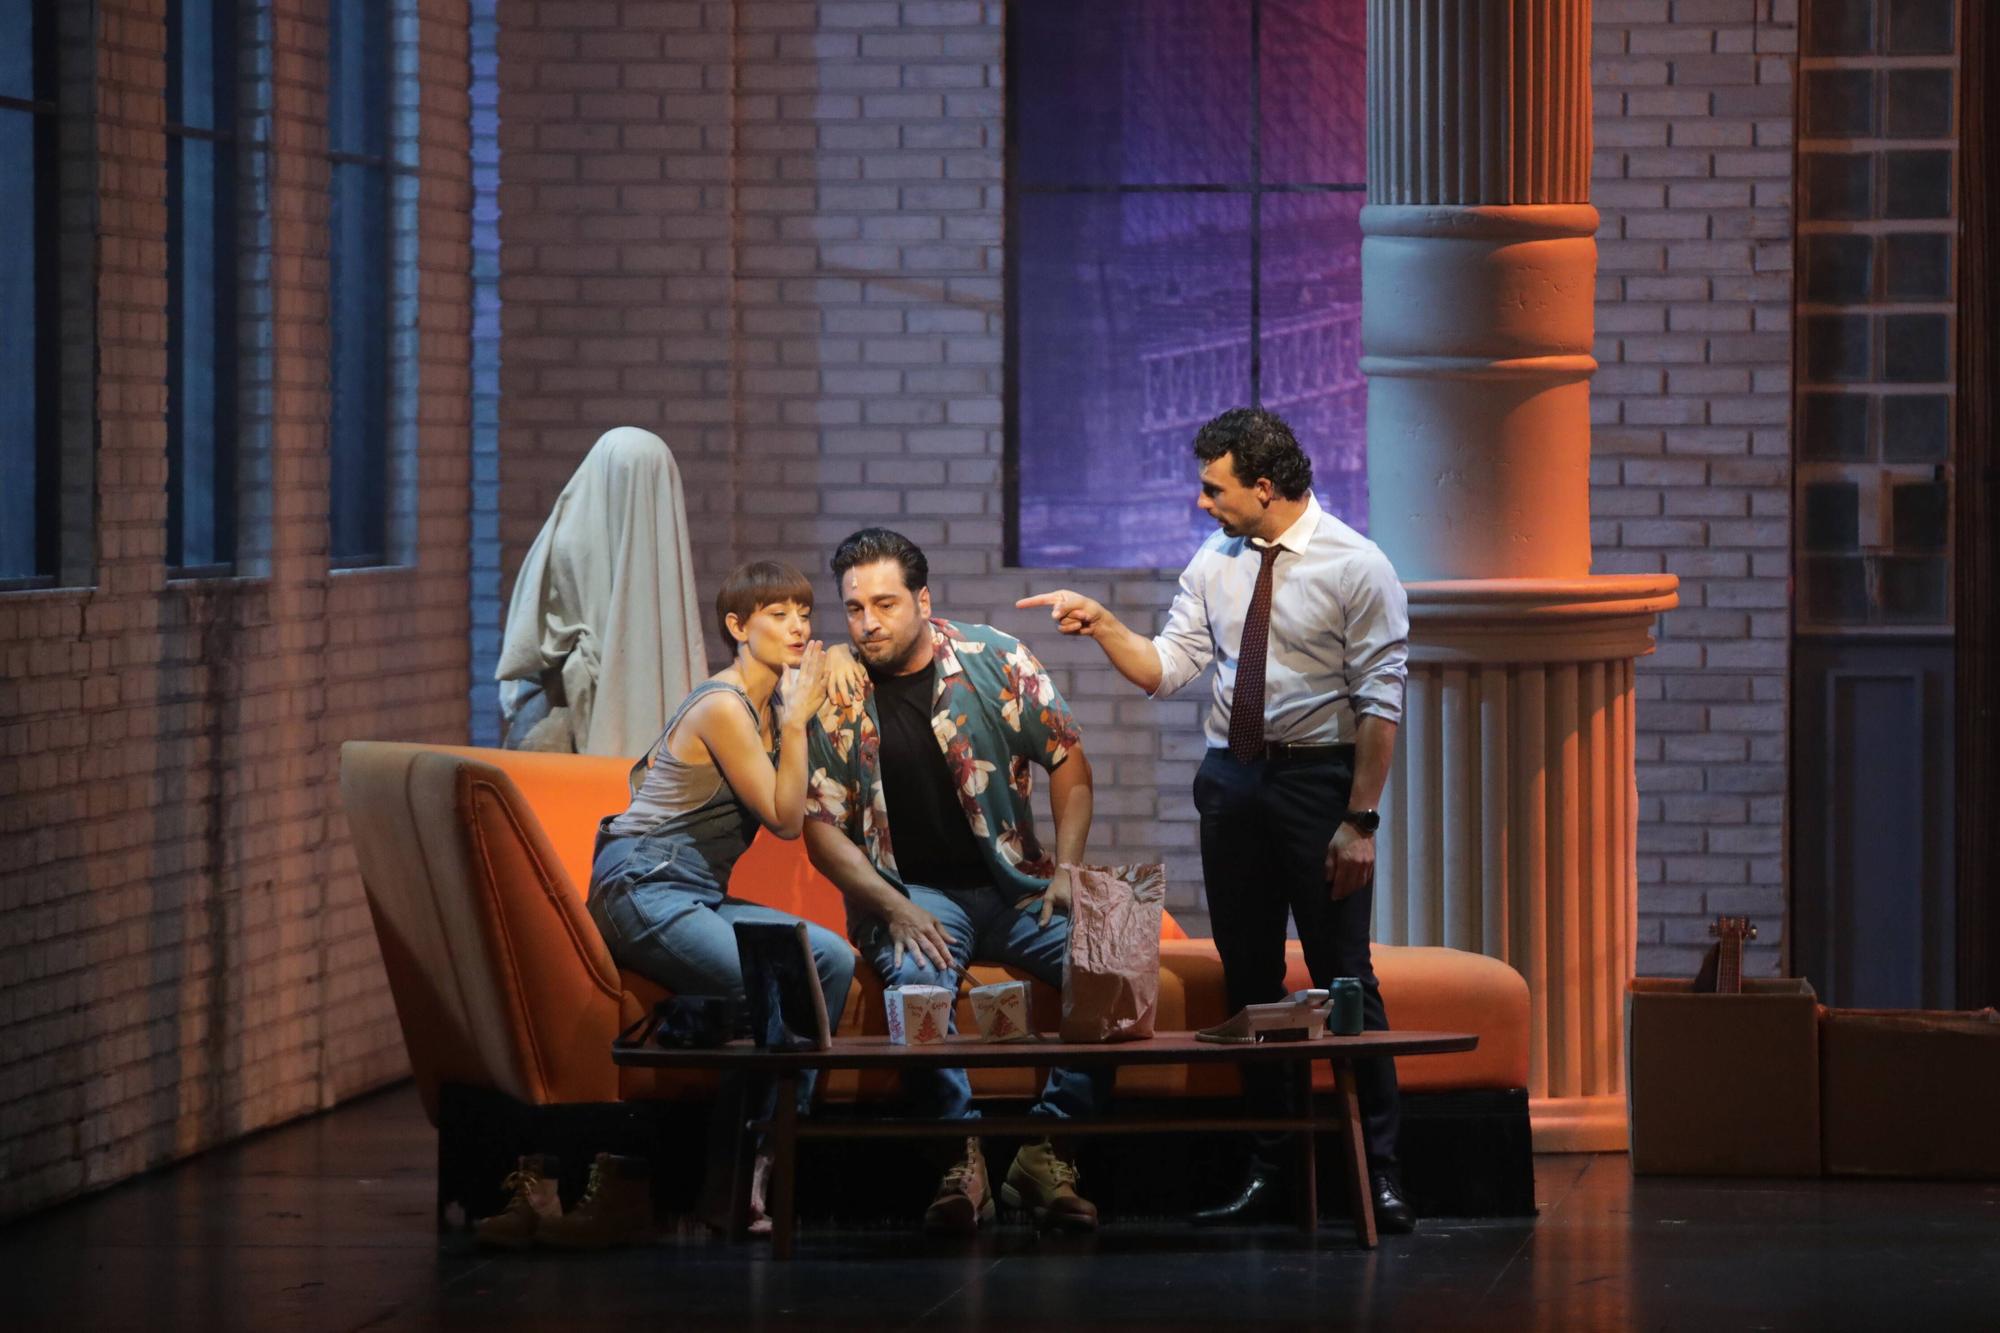 David Bustamante triunfa en el teatro Jovellanos con "Ghost"